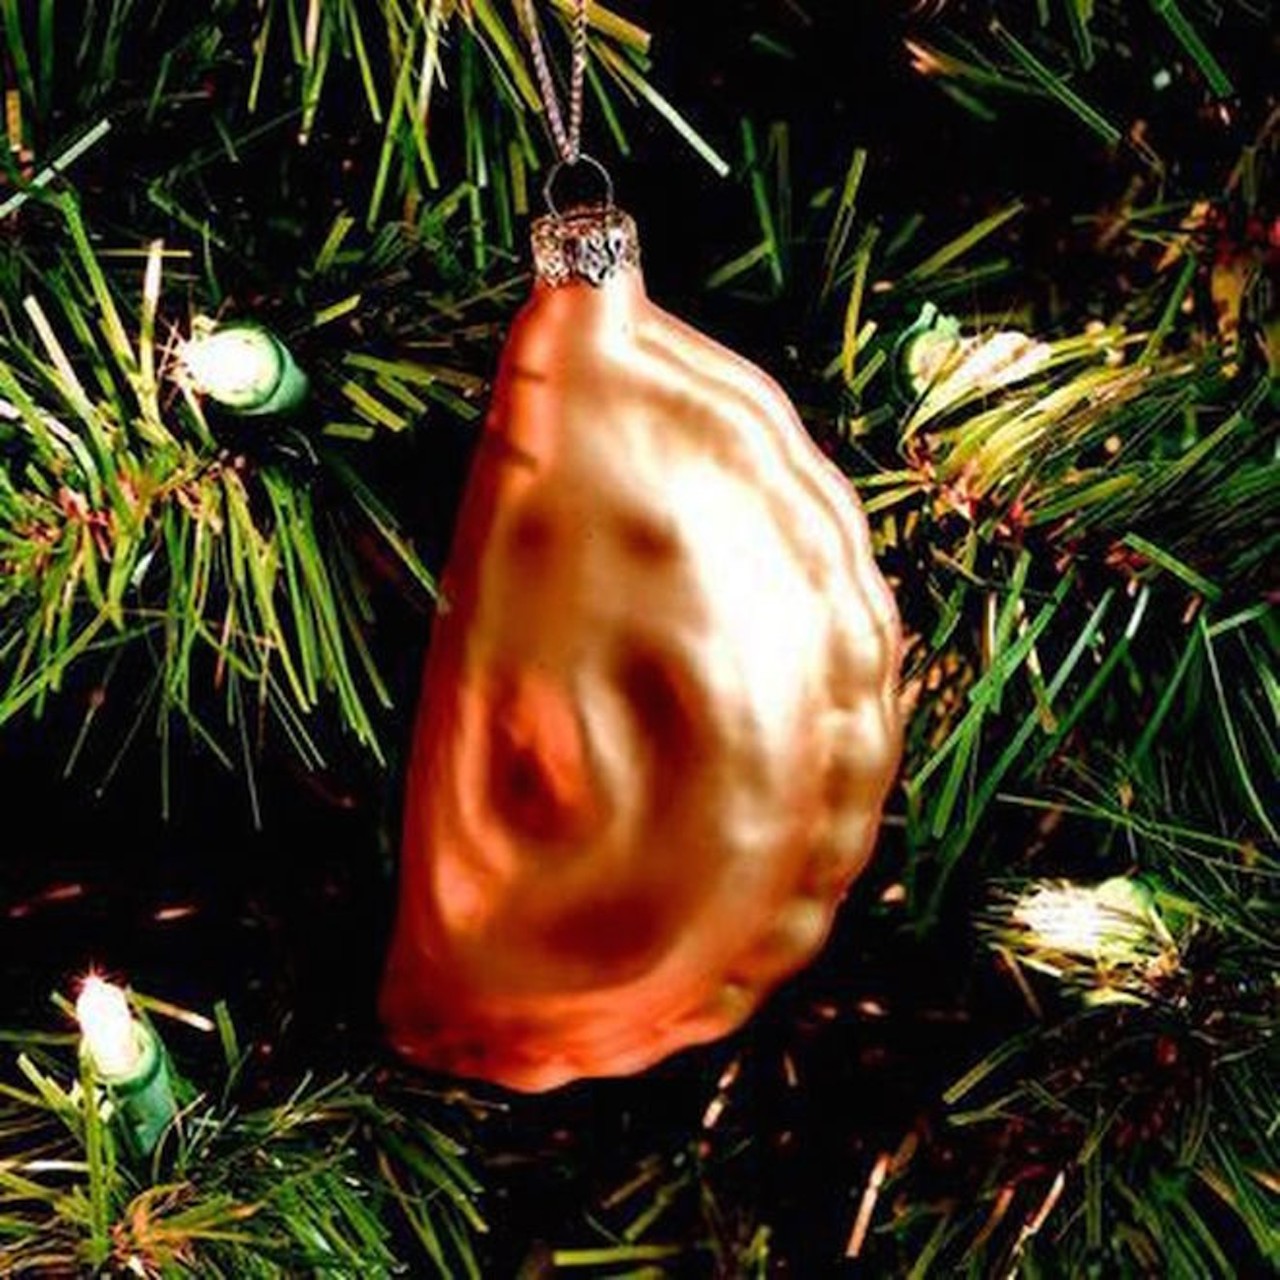 A Christmas tree ornament shaped like a pierogi.